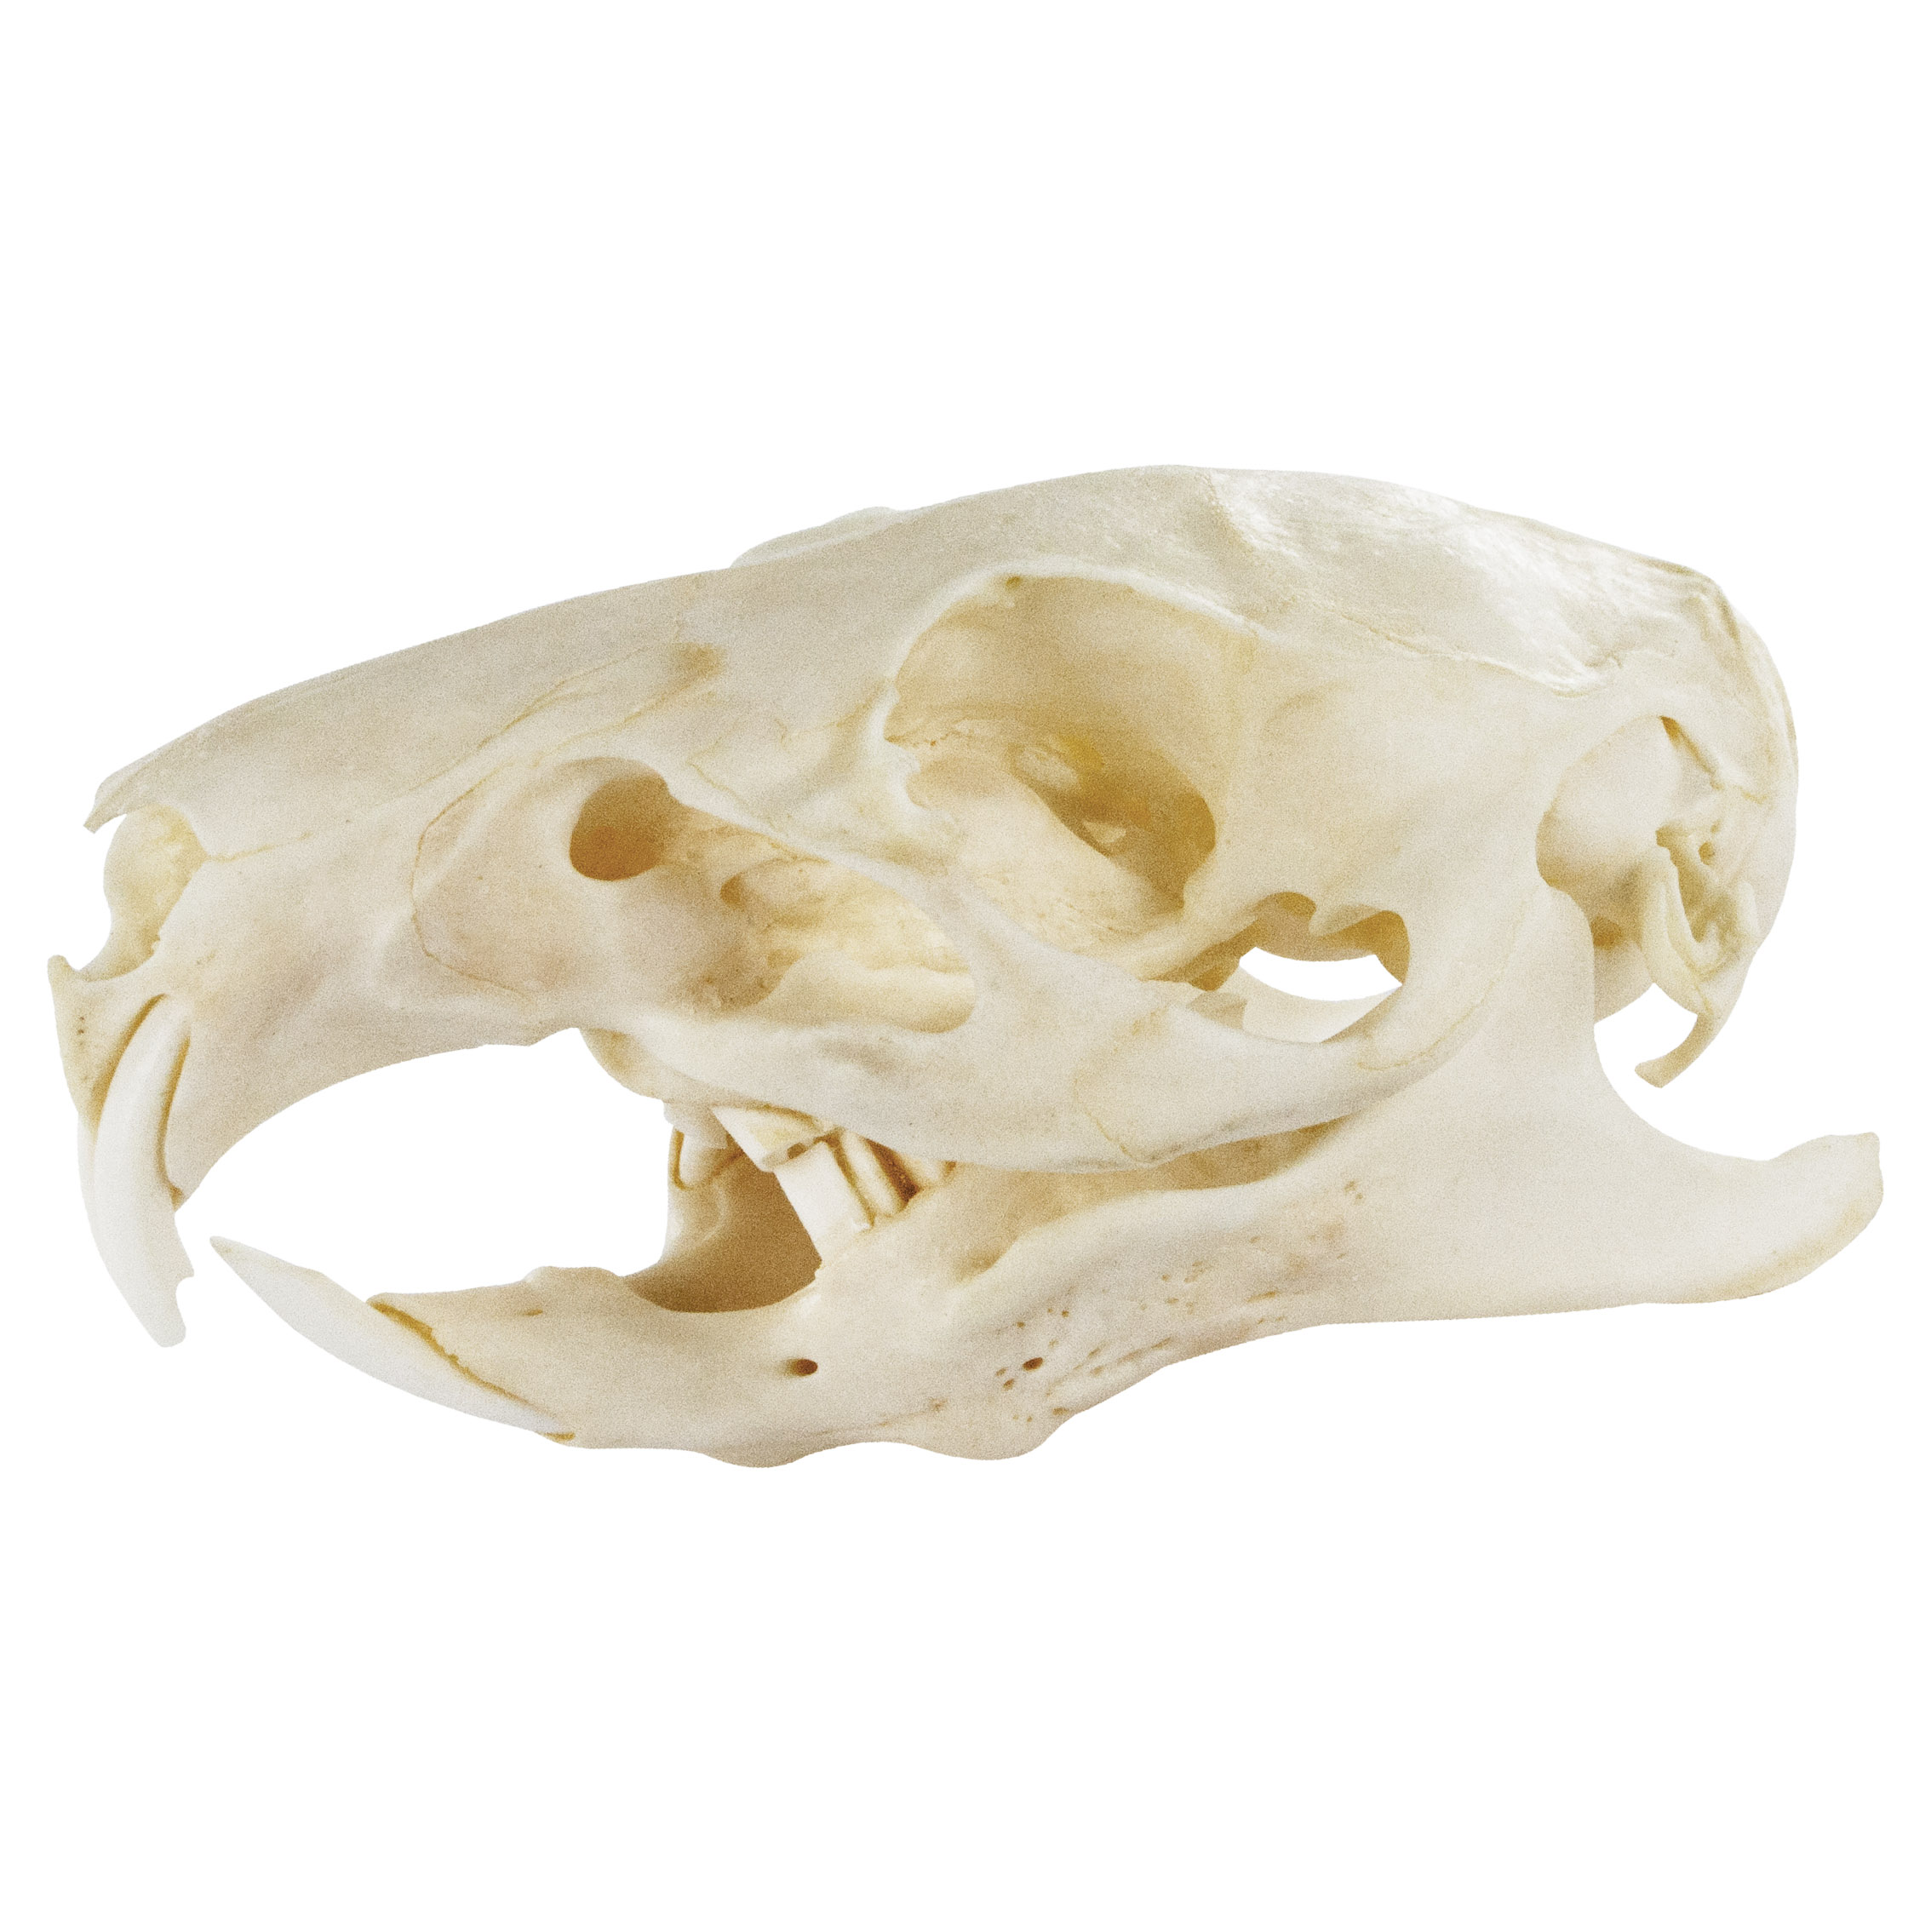 Guinea Pig Skull Natural Bone Quality A 